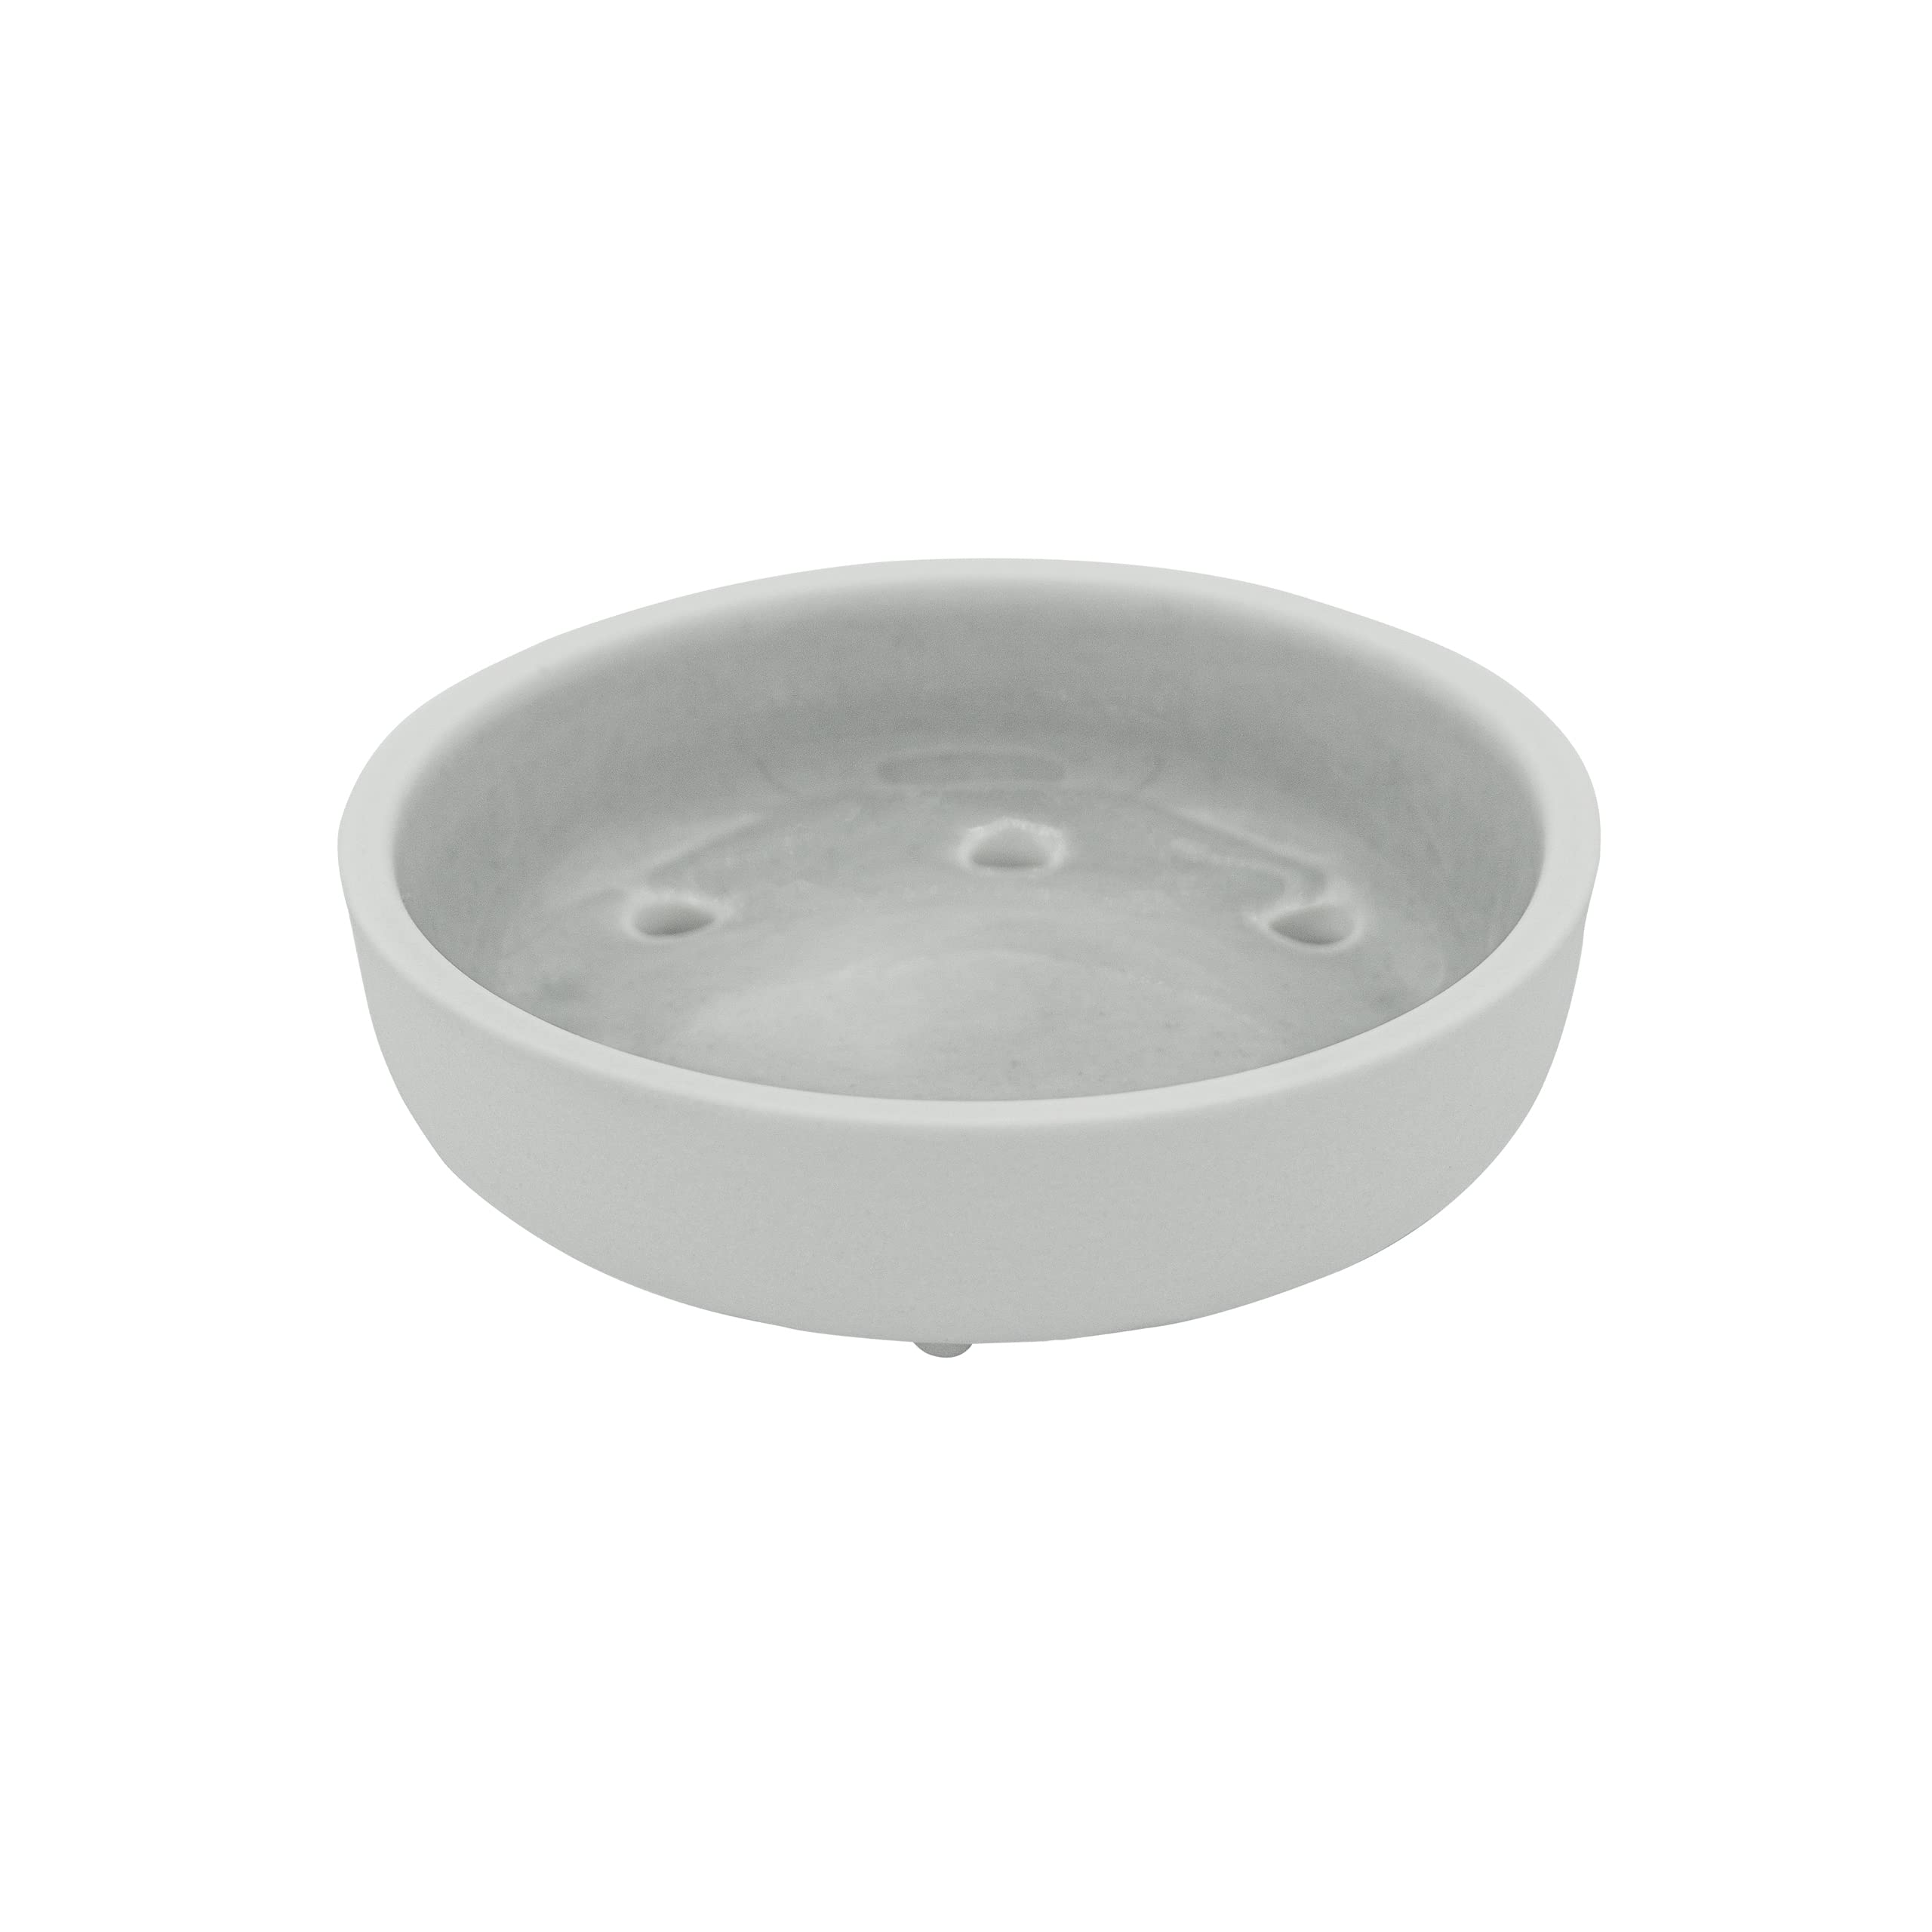 hello simple - Seifenschale aus Porzellan – spülmaschinenfest – Handmade – plastikfrei (grau)